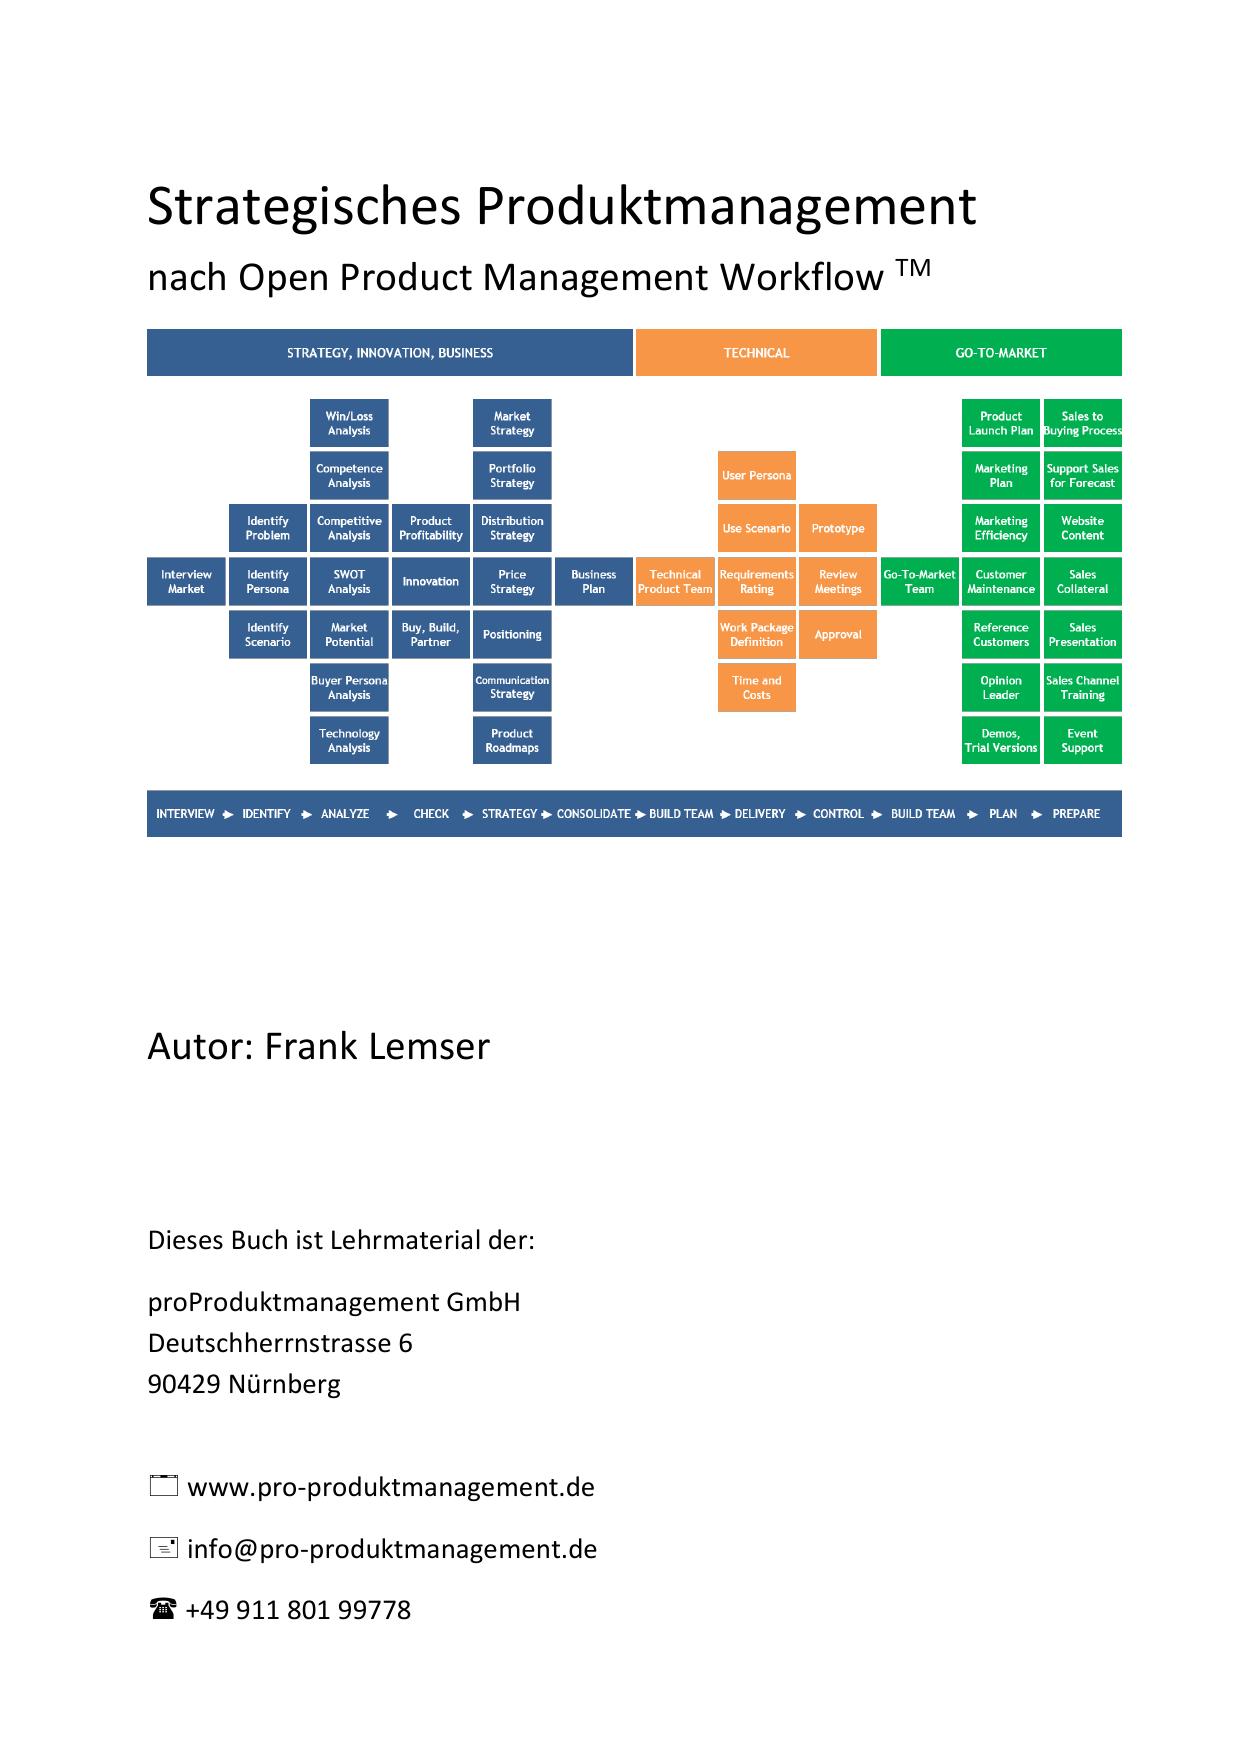 Strategisches Produktmanagement nach Open Product Management Workflow: Das Produktmanagement-Buch, das Schritt für Schritt die Produktmanager-Aufgaben erklärt und Werkzeuge aus der Praxis liefert